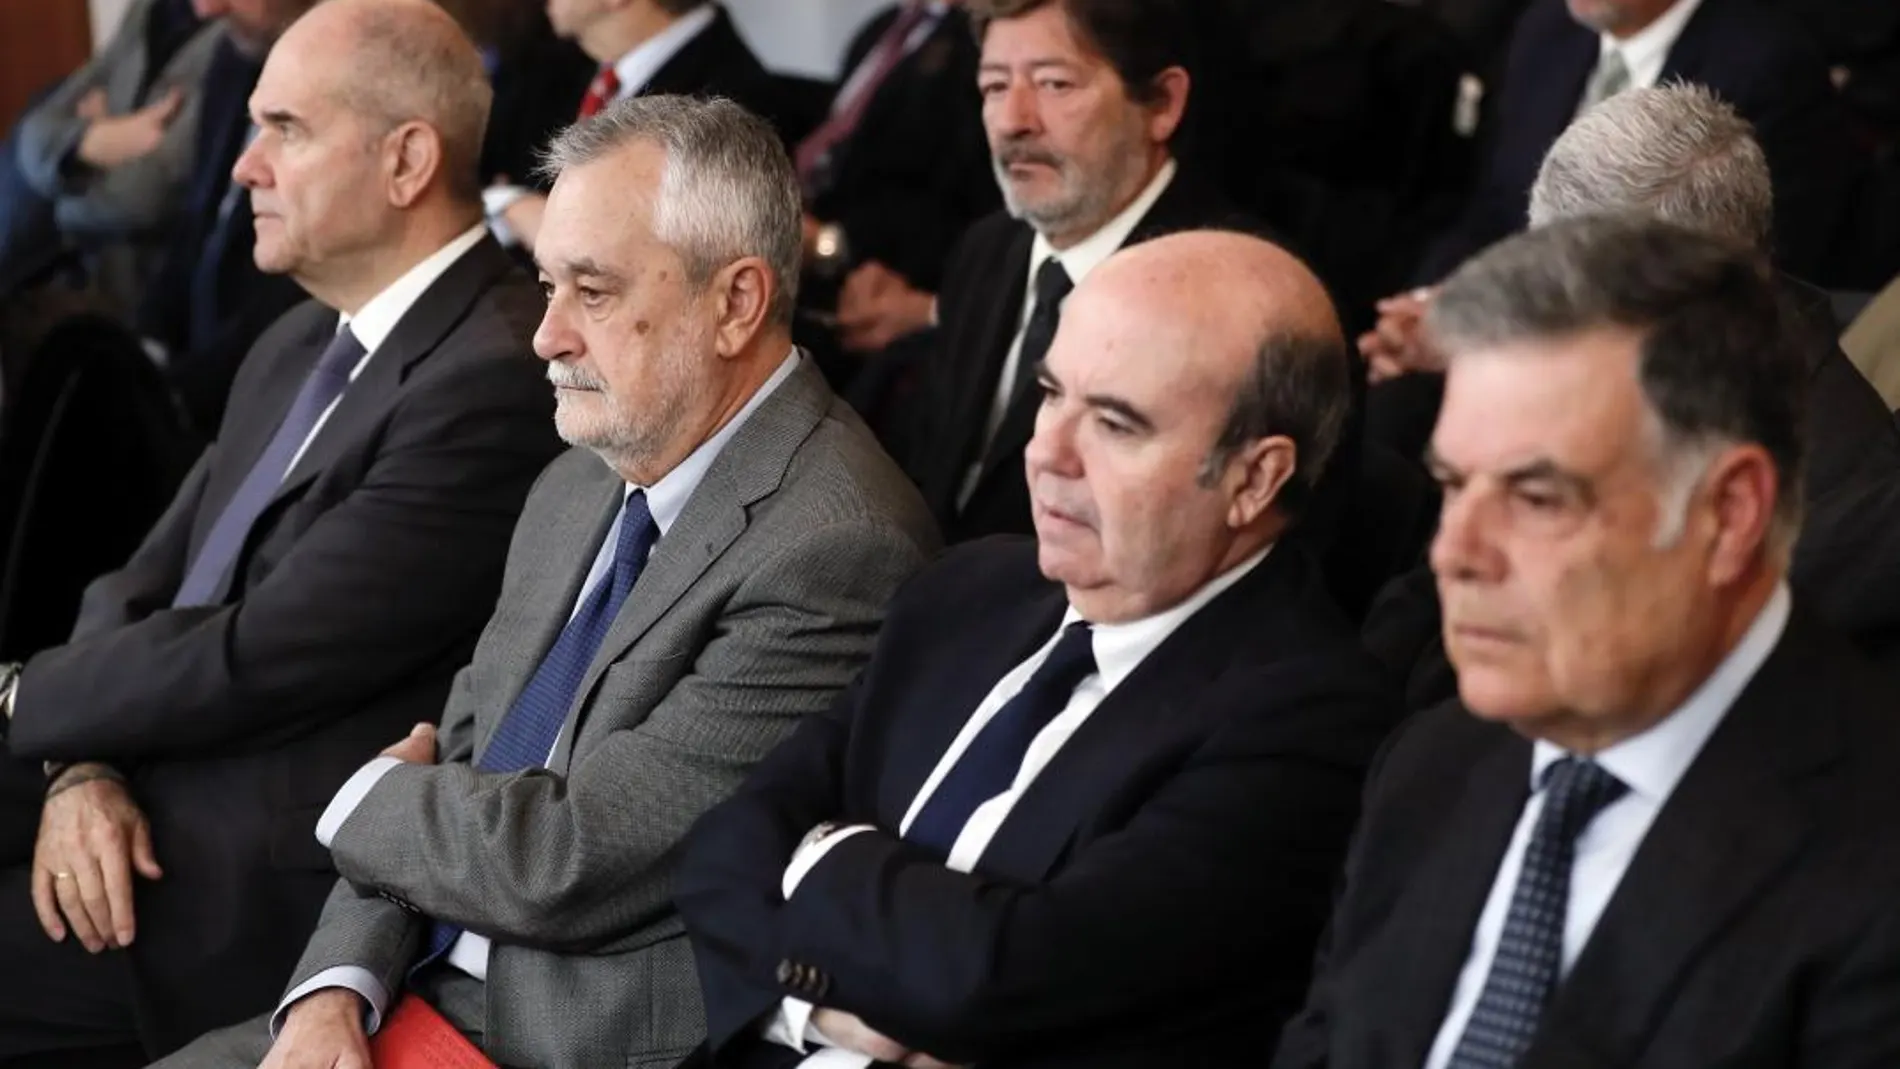 Manuel Chaves y José Antonio Griñán se encuentran entre los 22 ex altos cargos de la Junta encausados en la rama política de los ERE (Foto: Efe)